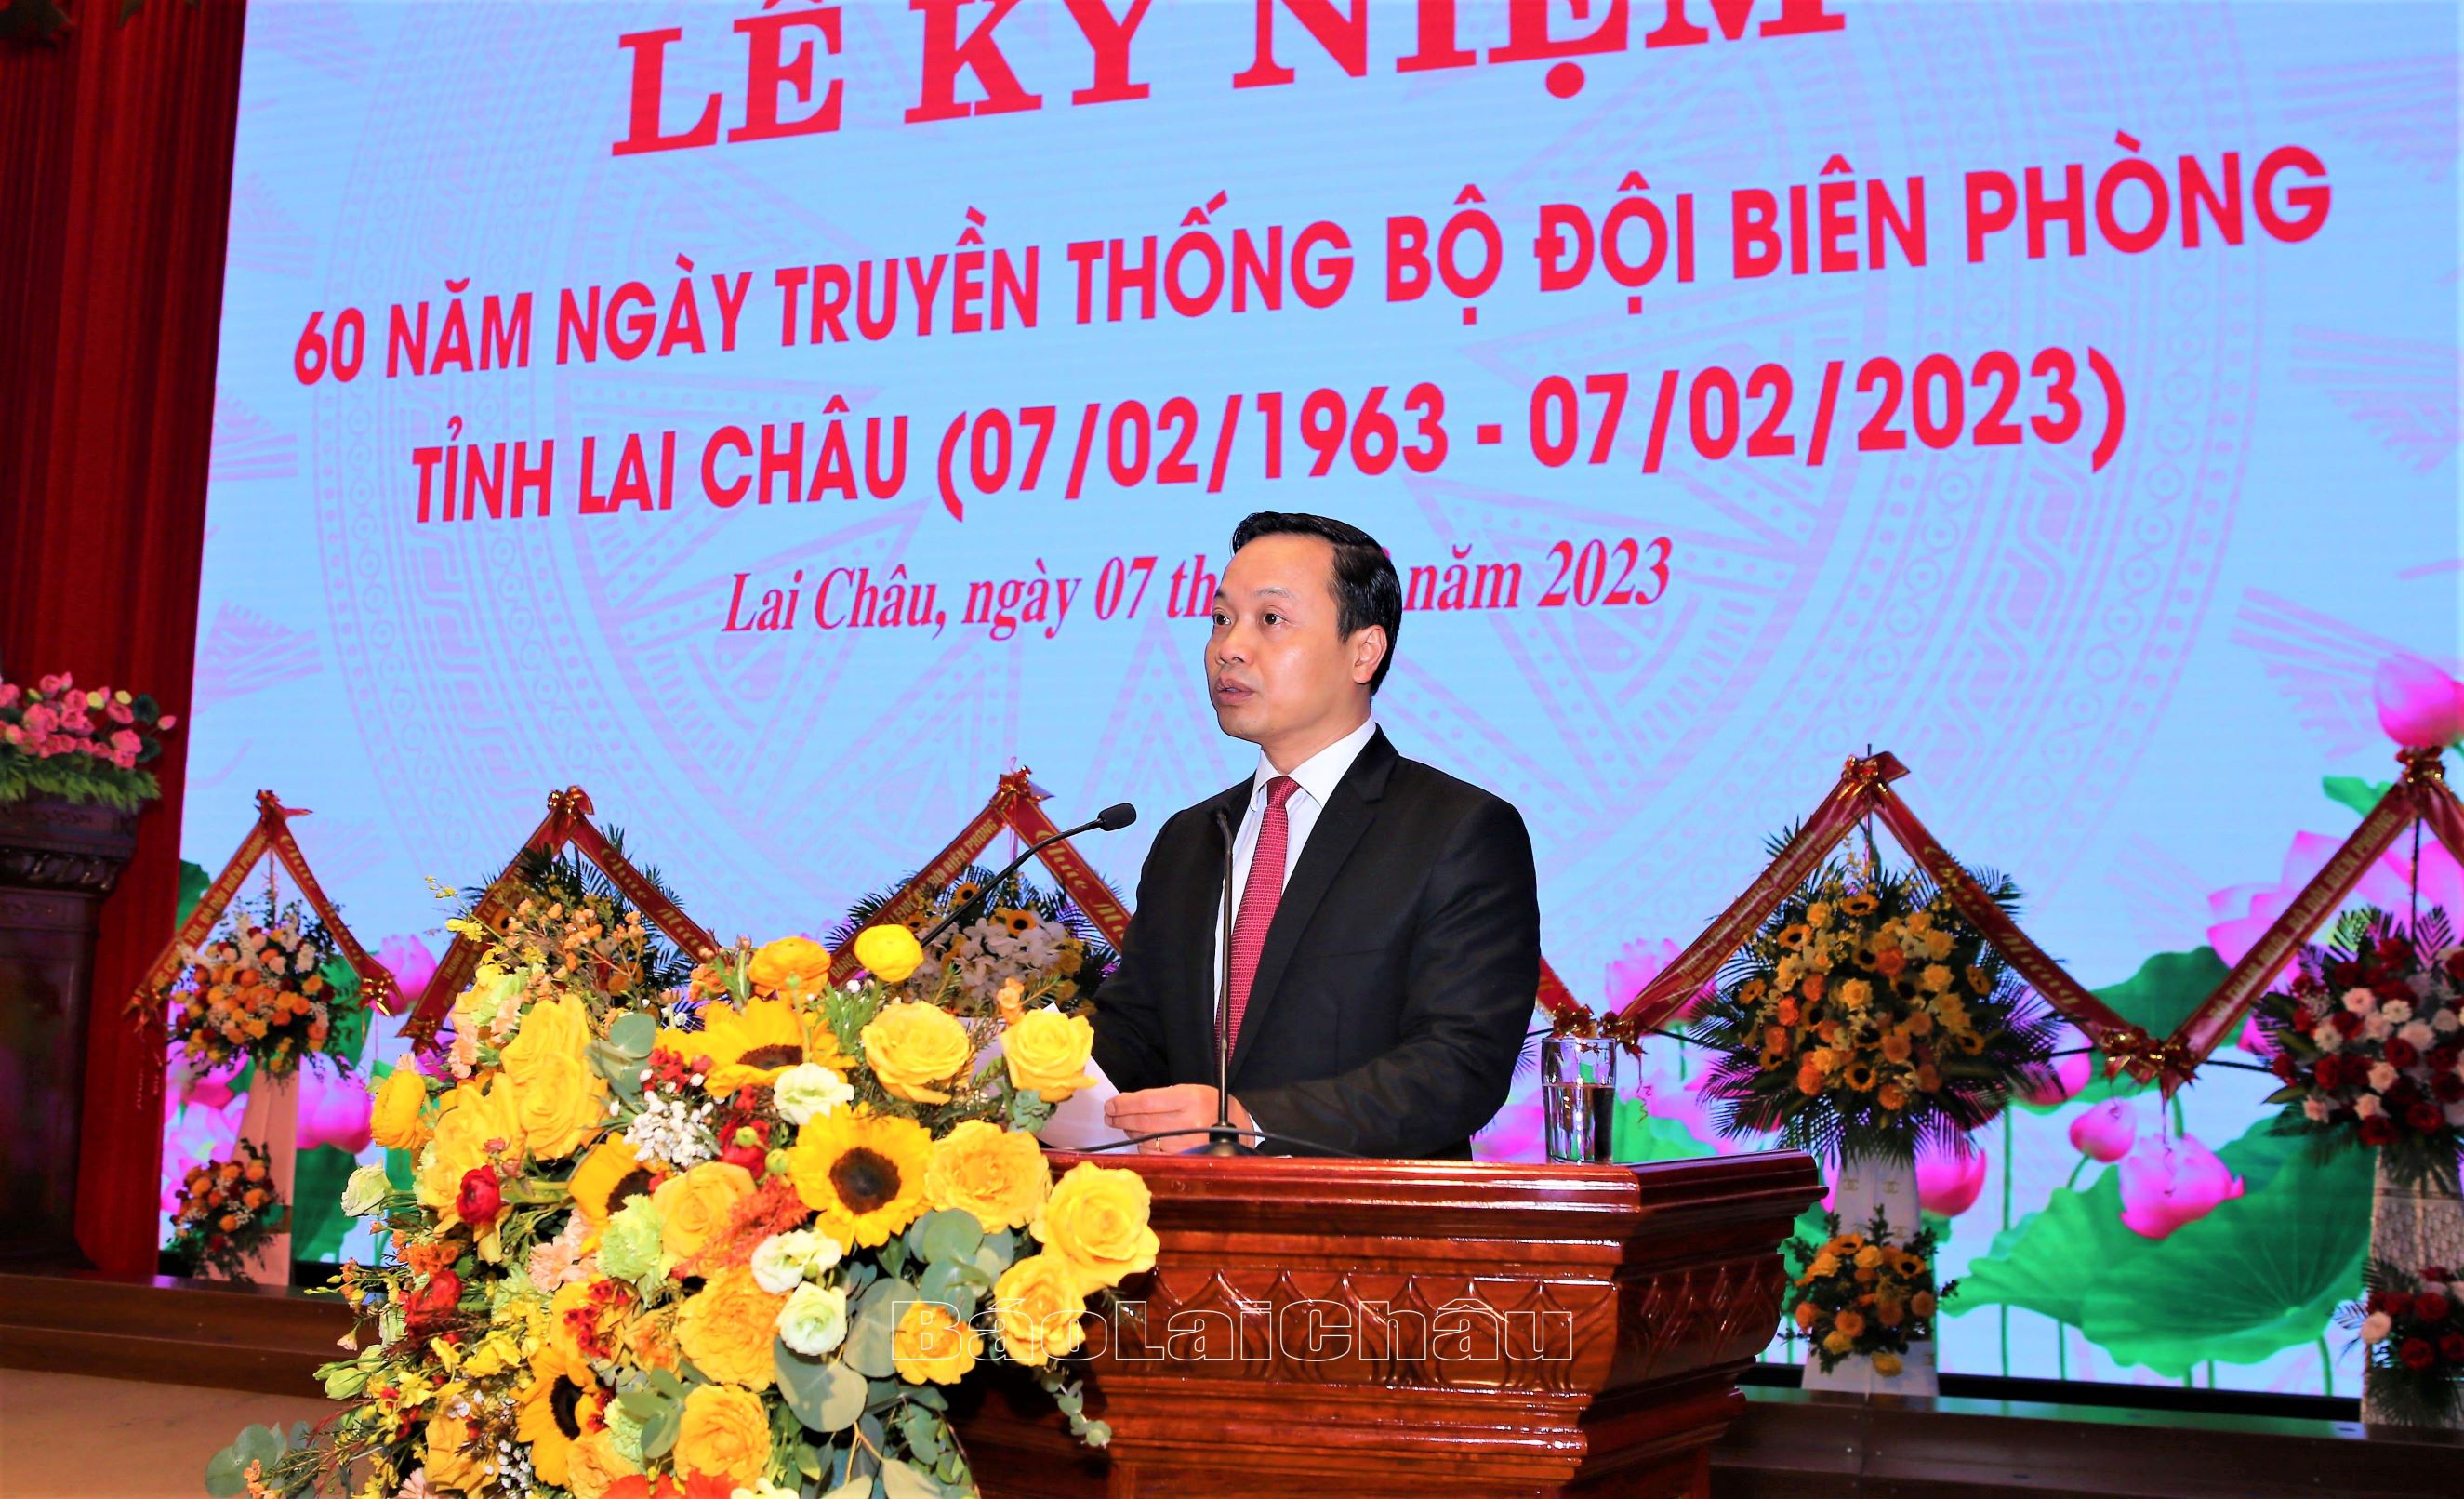 Đồng chí Trần Tiến Dũng, Phó Bí thư Tỉnh ủy, Chủ tịch UBND tỉnh phát biểu tại buổi lễ kỷ niêm.